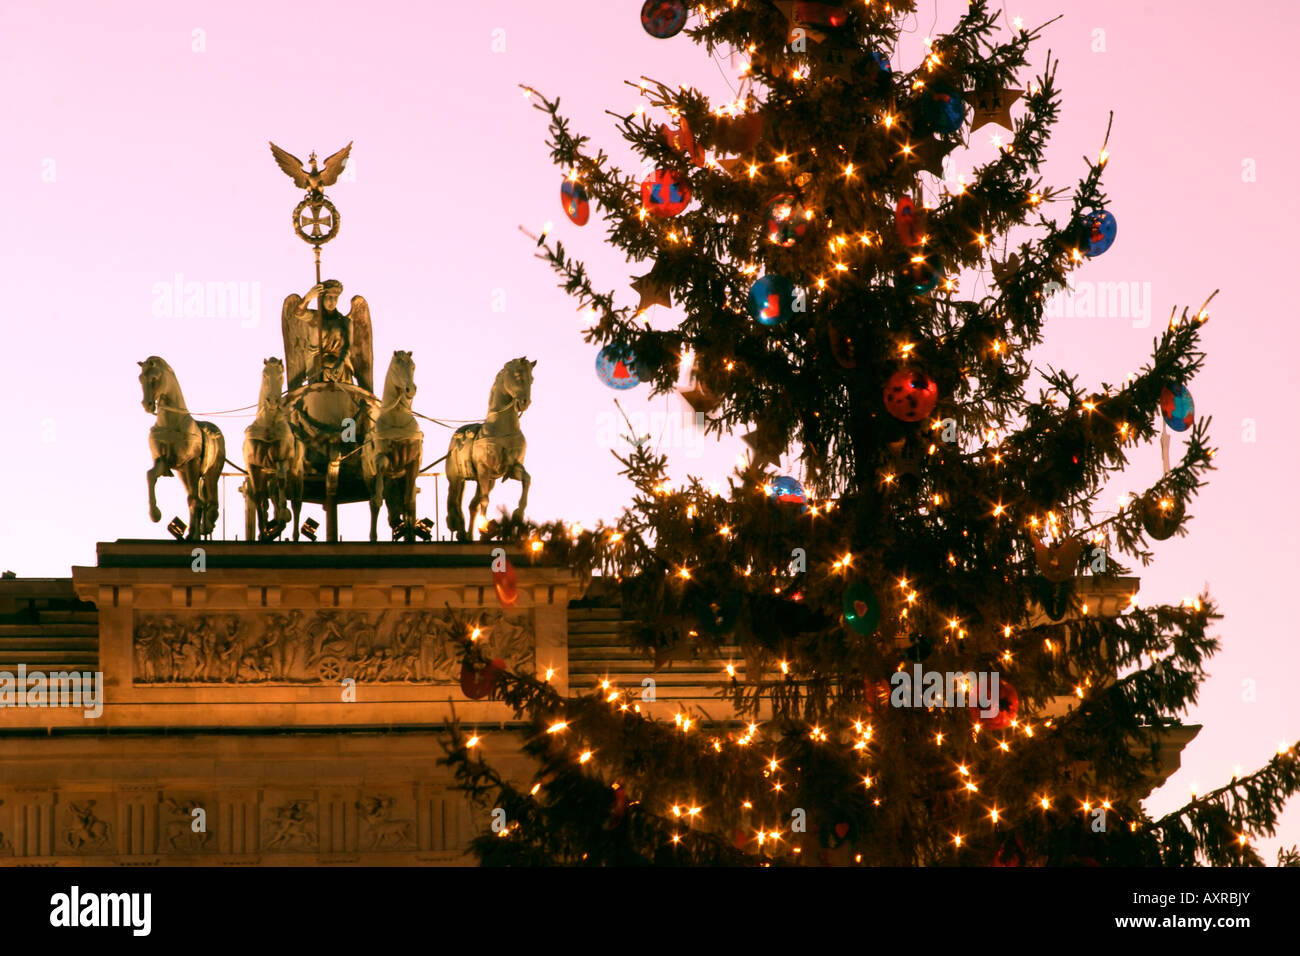 Berlin Brandeburg gate christmas tree Berlin Brandenburger Tor Pariser Platz mit Weihnachtsbaum Stock Photo